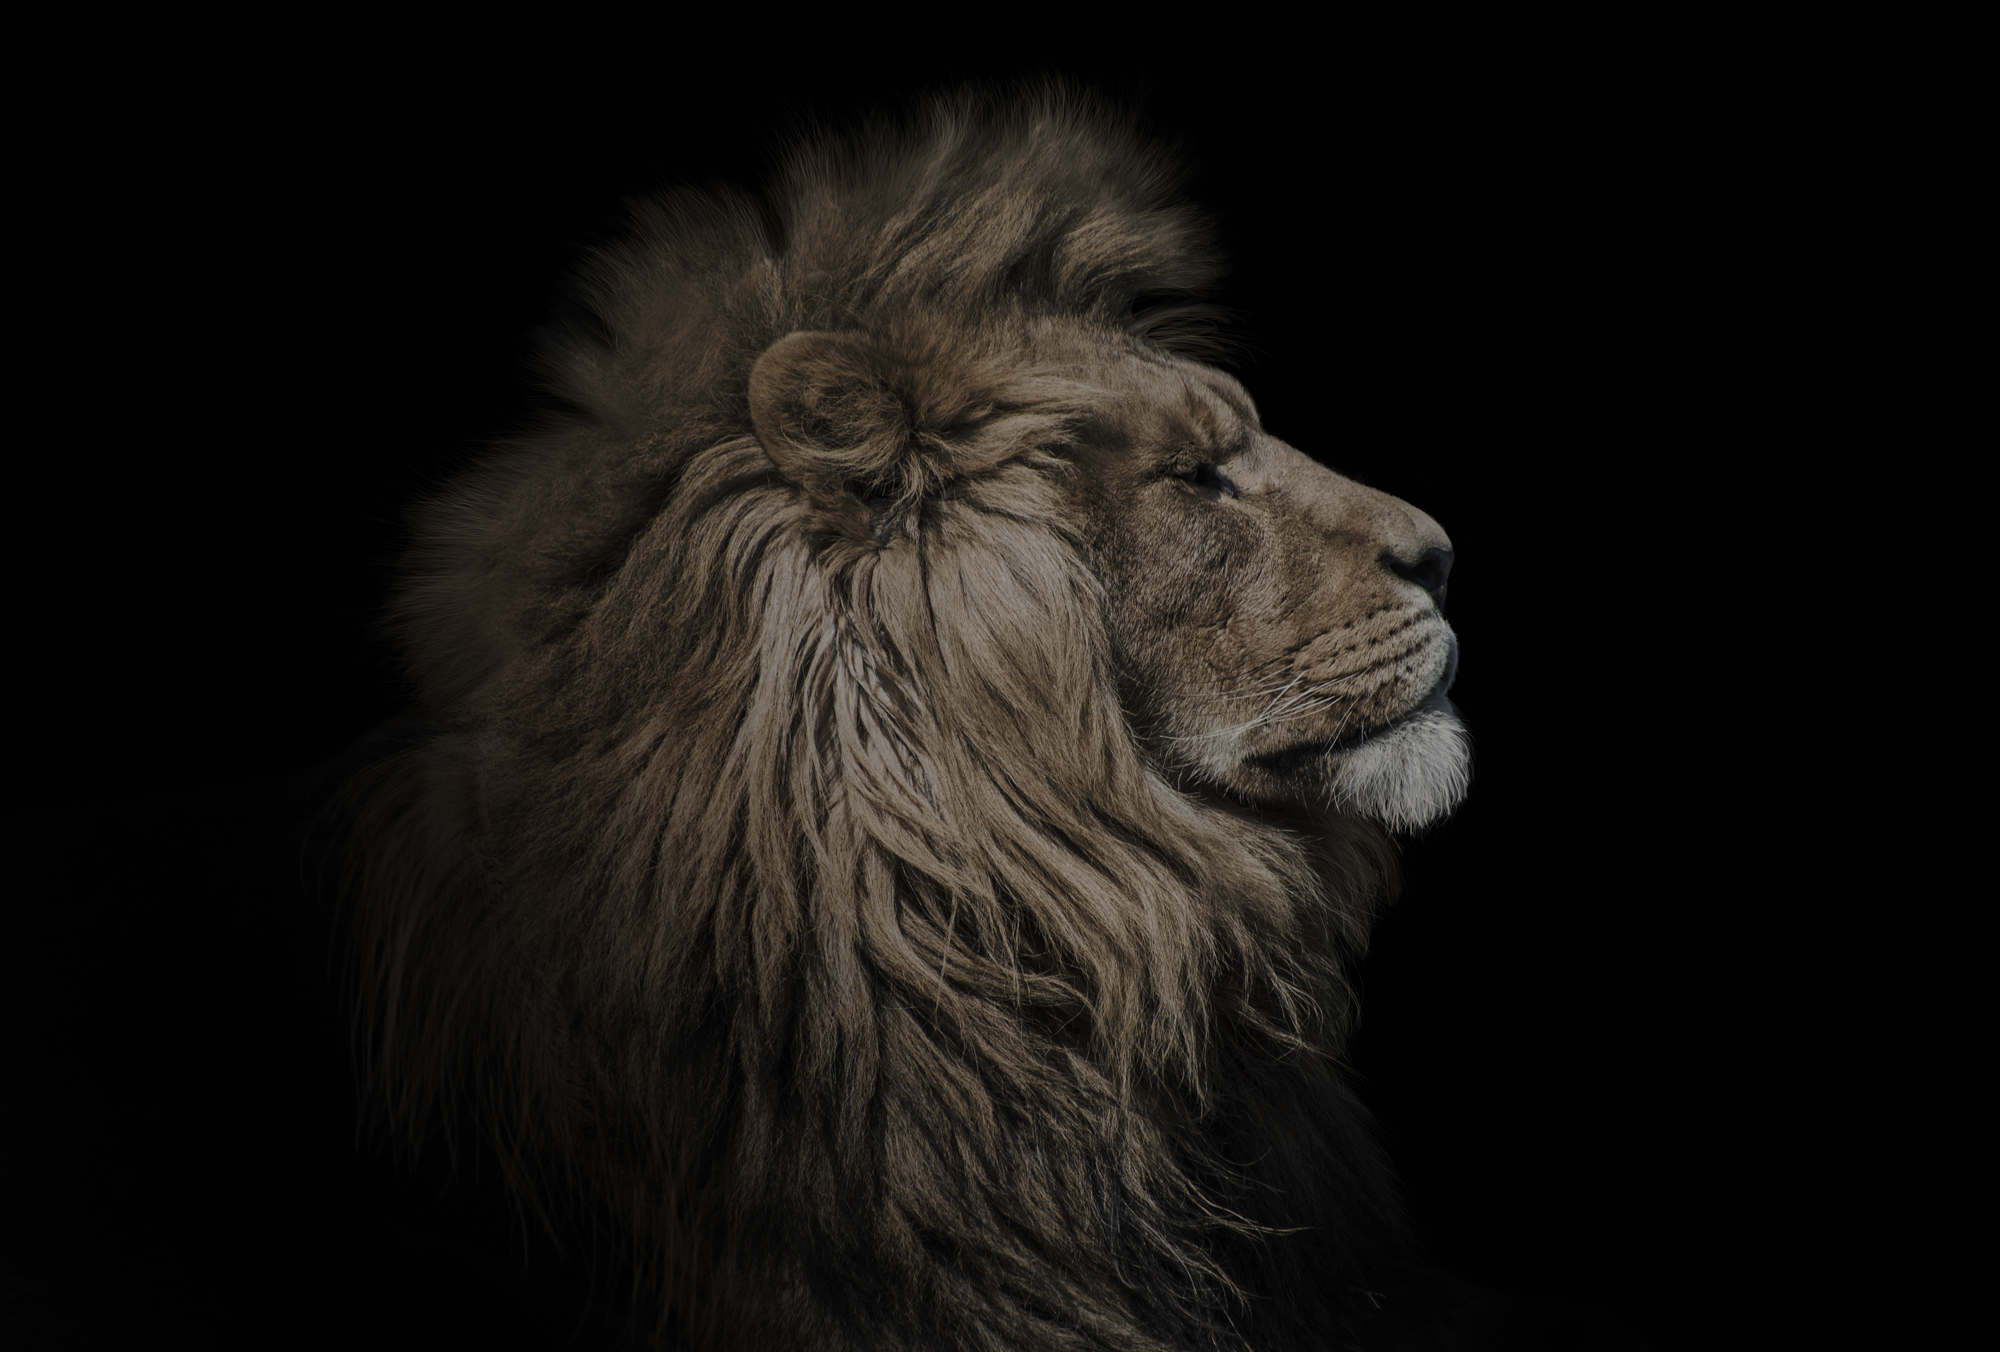 A lion